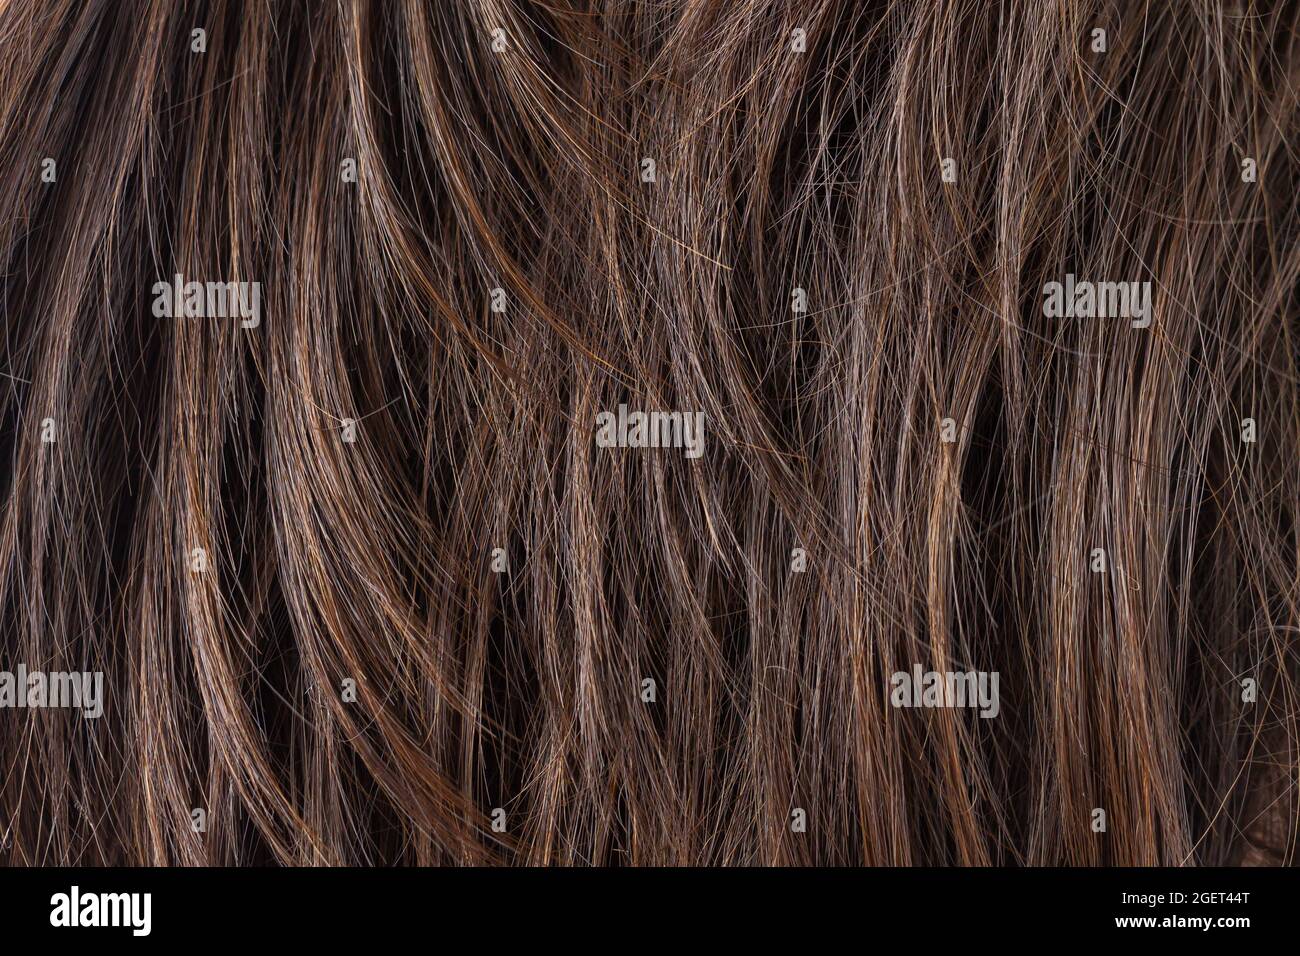 Texture de brunette naturelle foncée cheveux droits. Coupe de cheveux, coiffage, soin ou extension concept Banque D'Images